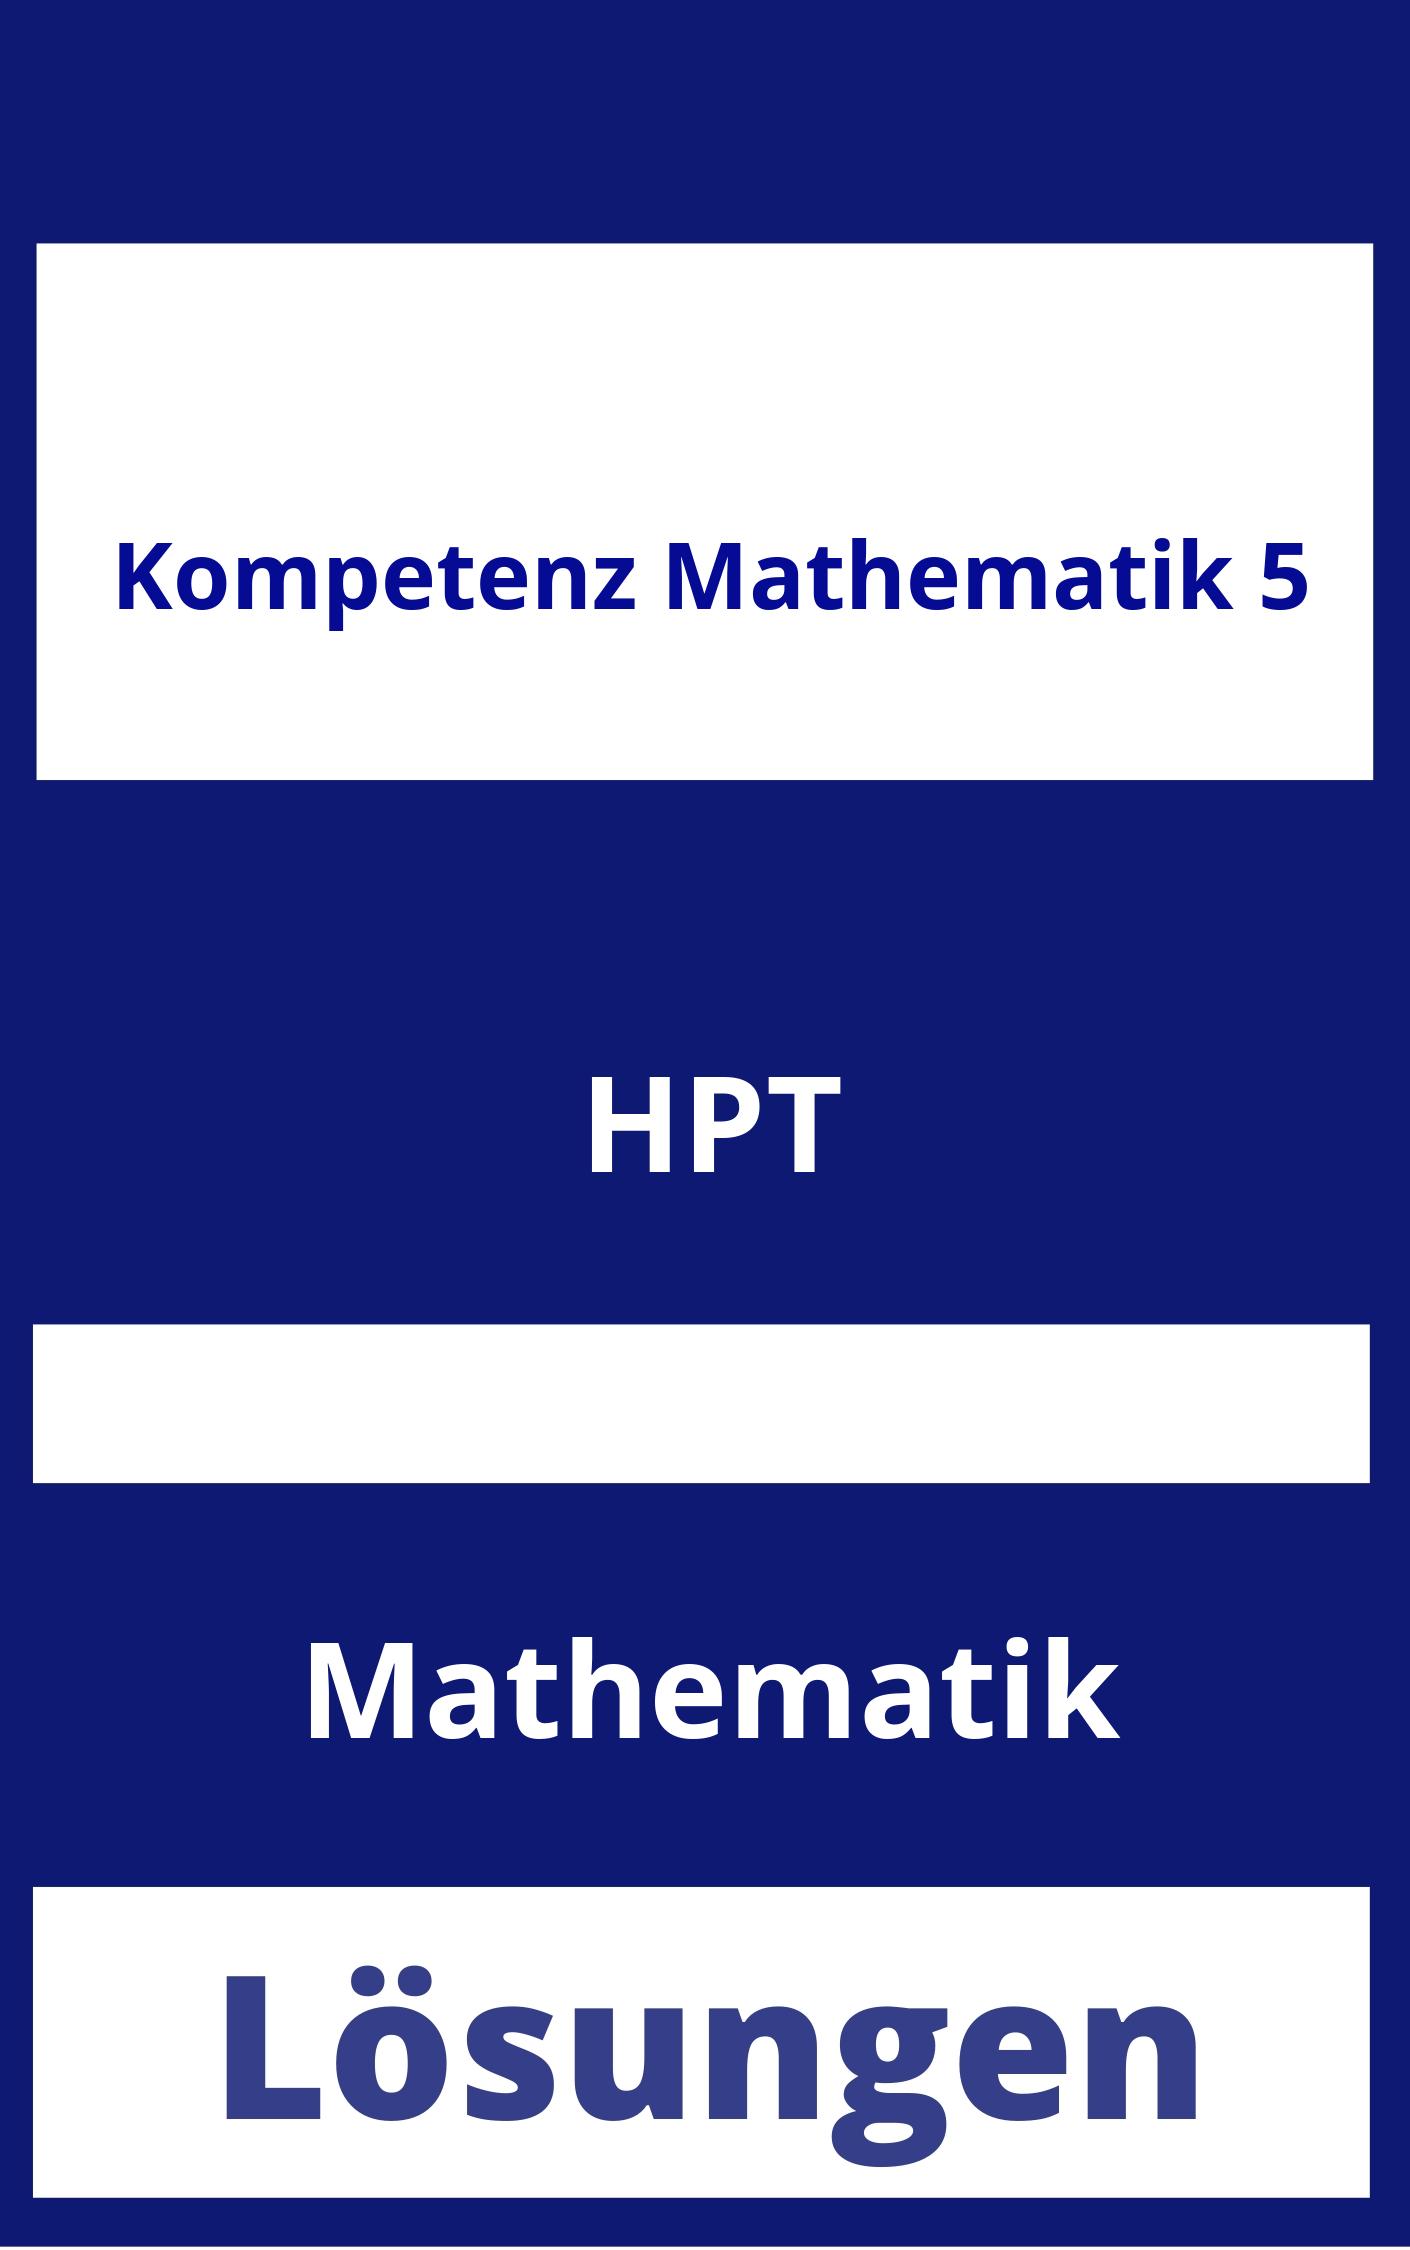 Kompetenz Mathematik 5 Lösungen PDF